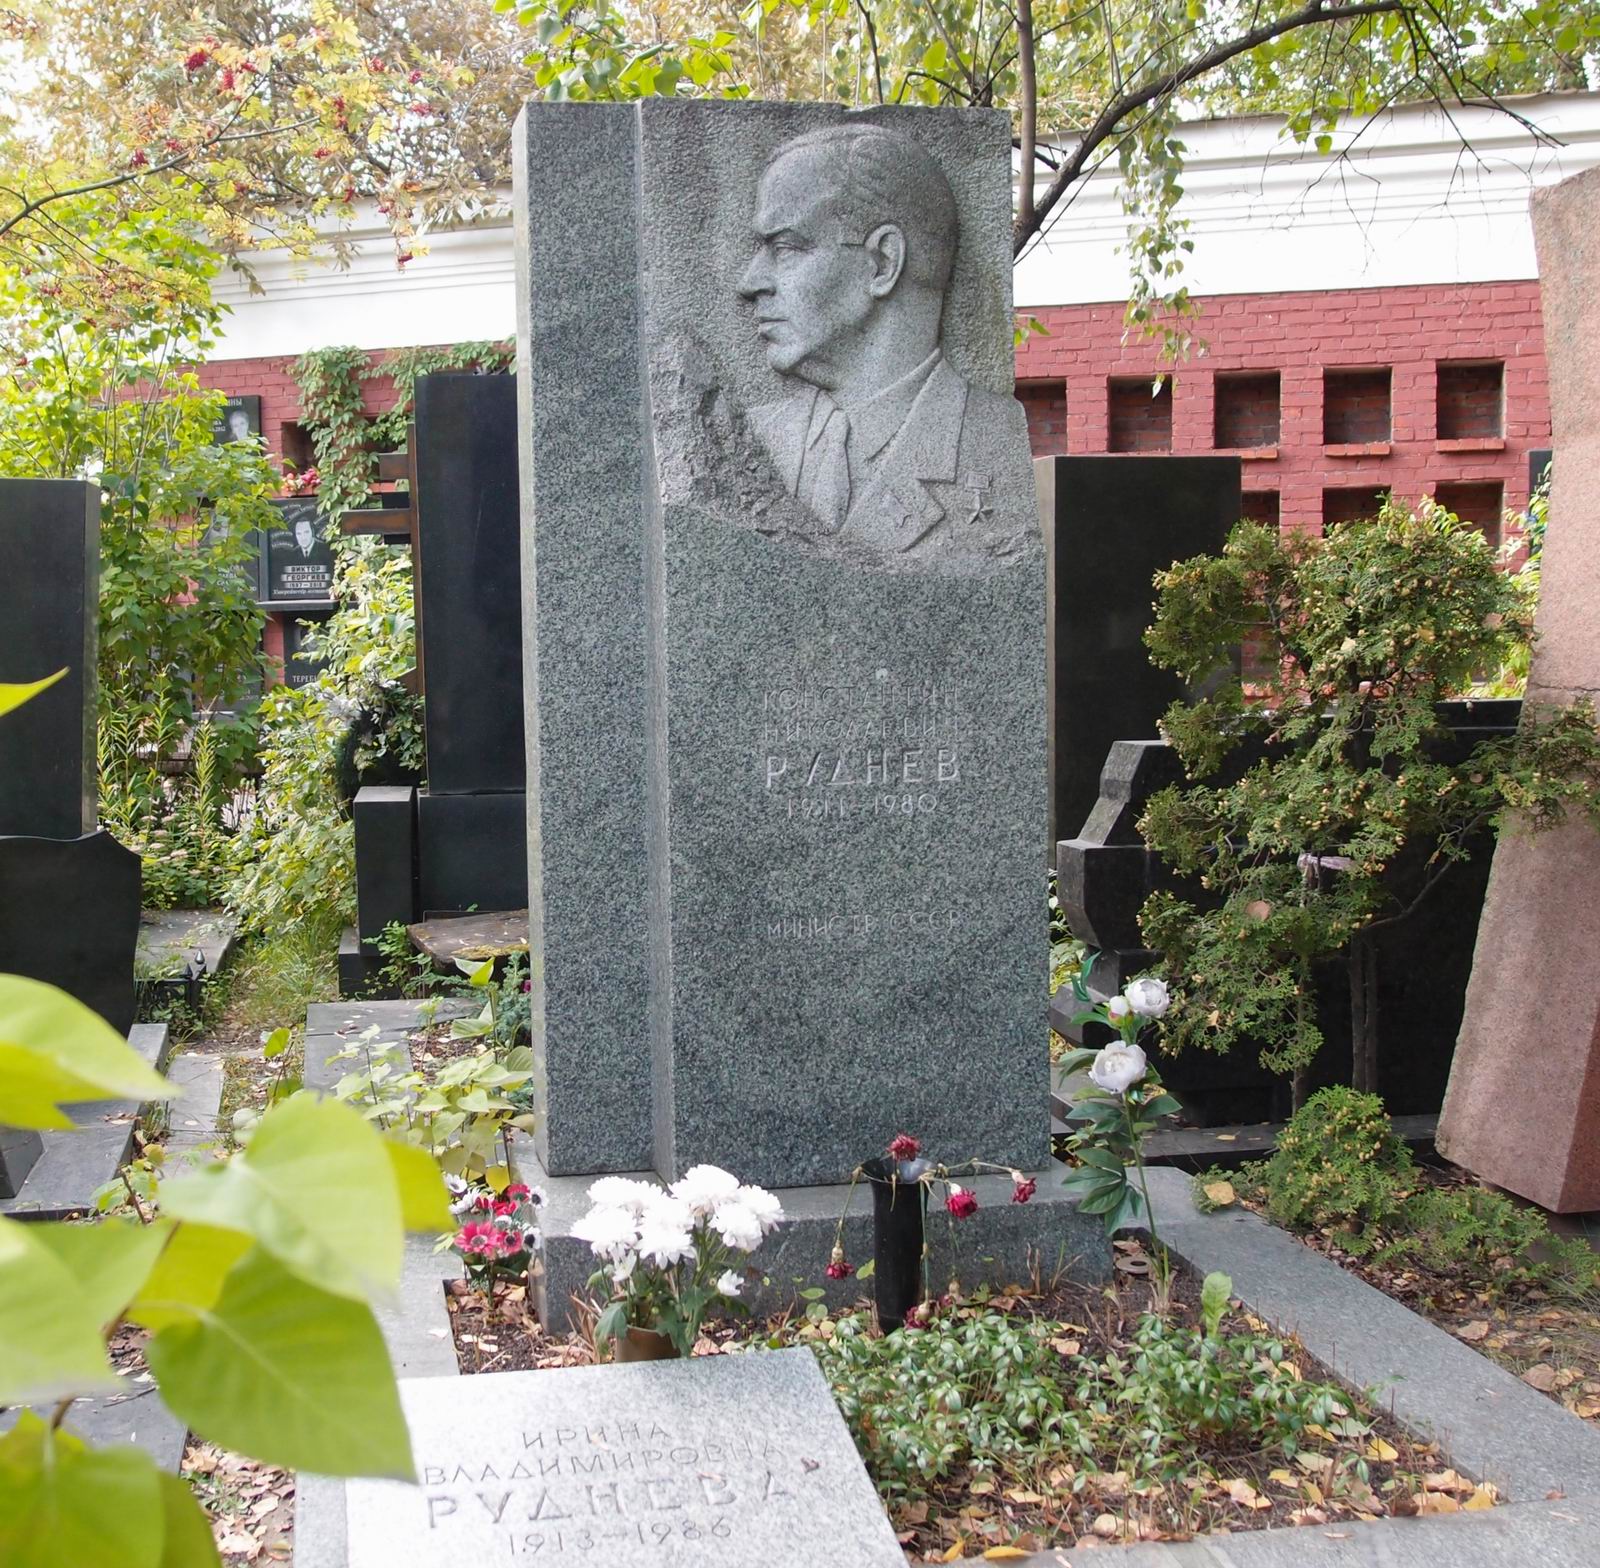 Памятник на могиле Руднева К.Н. (1911–1980), ск. Н.Саркисов, арх. И.Былинкин, на Новодевичьем кладбище (9–6–6). Нажмите левую кнопку мыши чтобы увидеть фрагмент памятника.